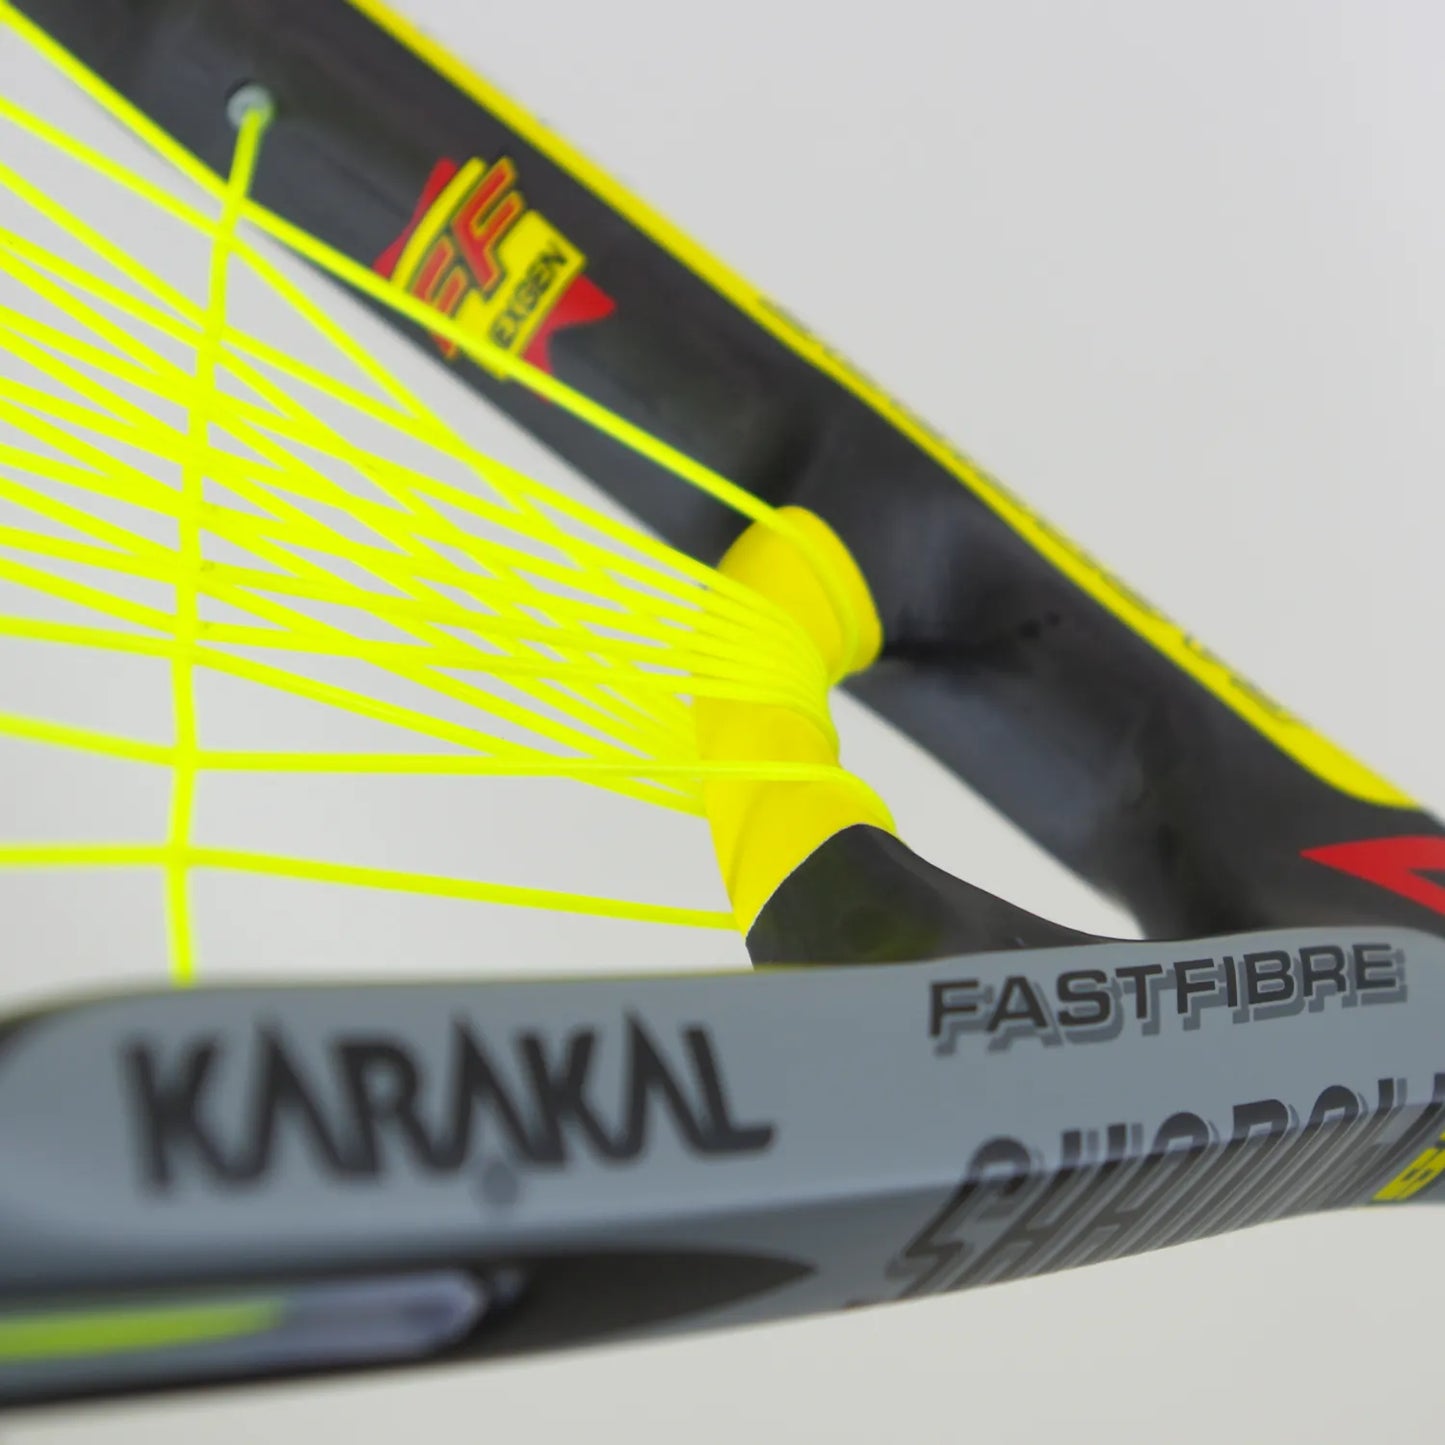 Karakal Core Shadow 155 Racketball SQ57 Racket